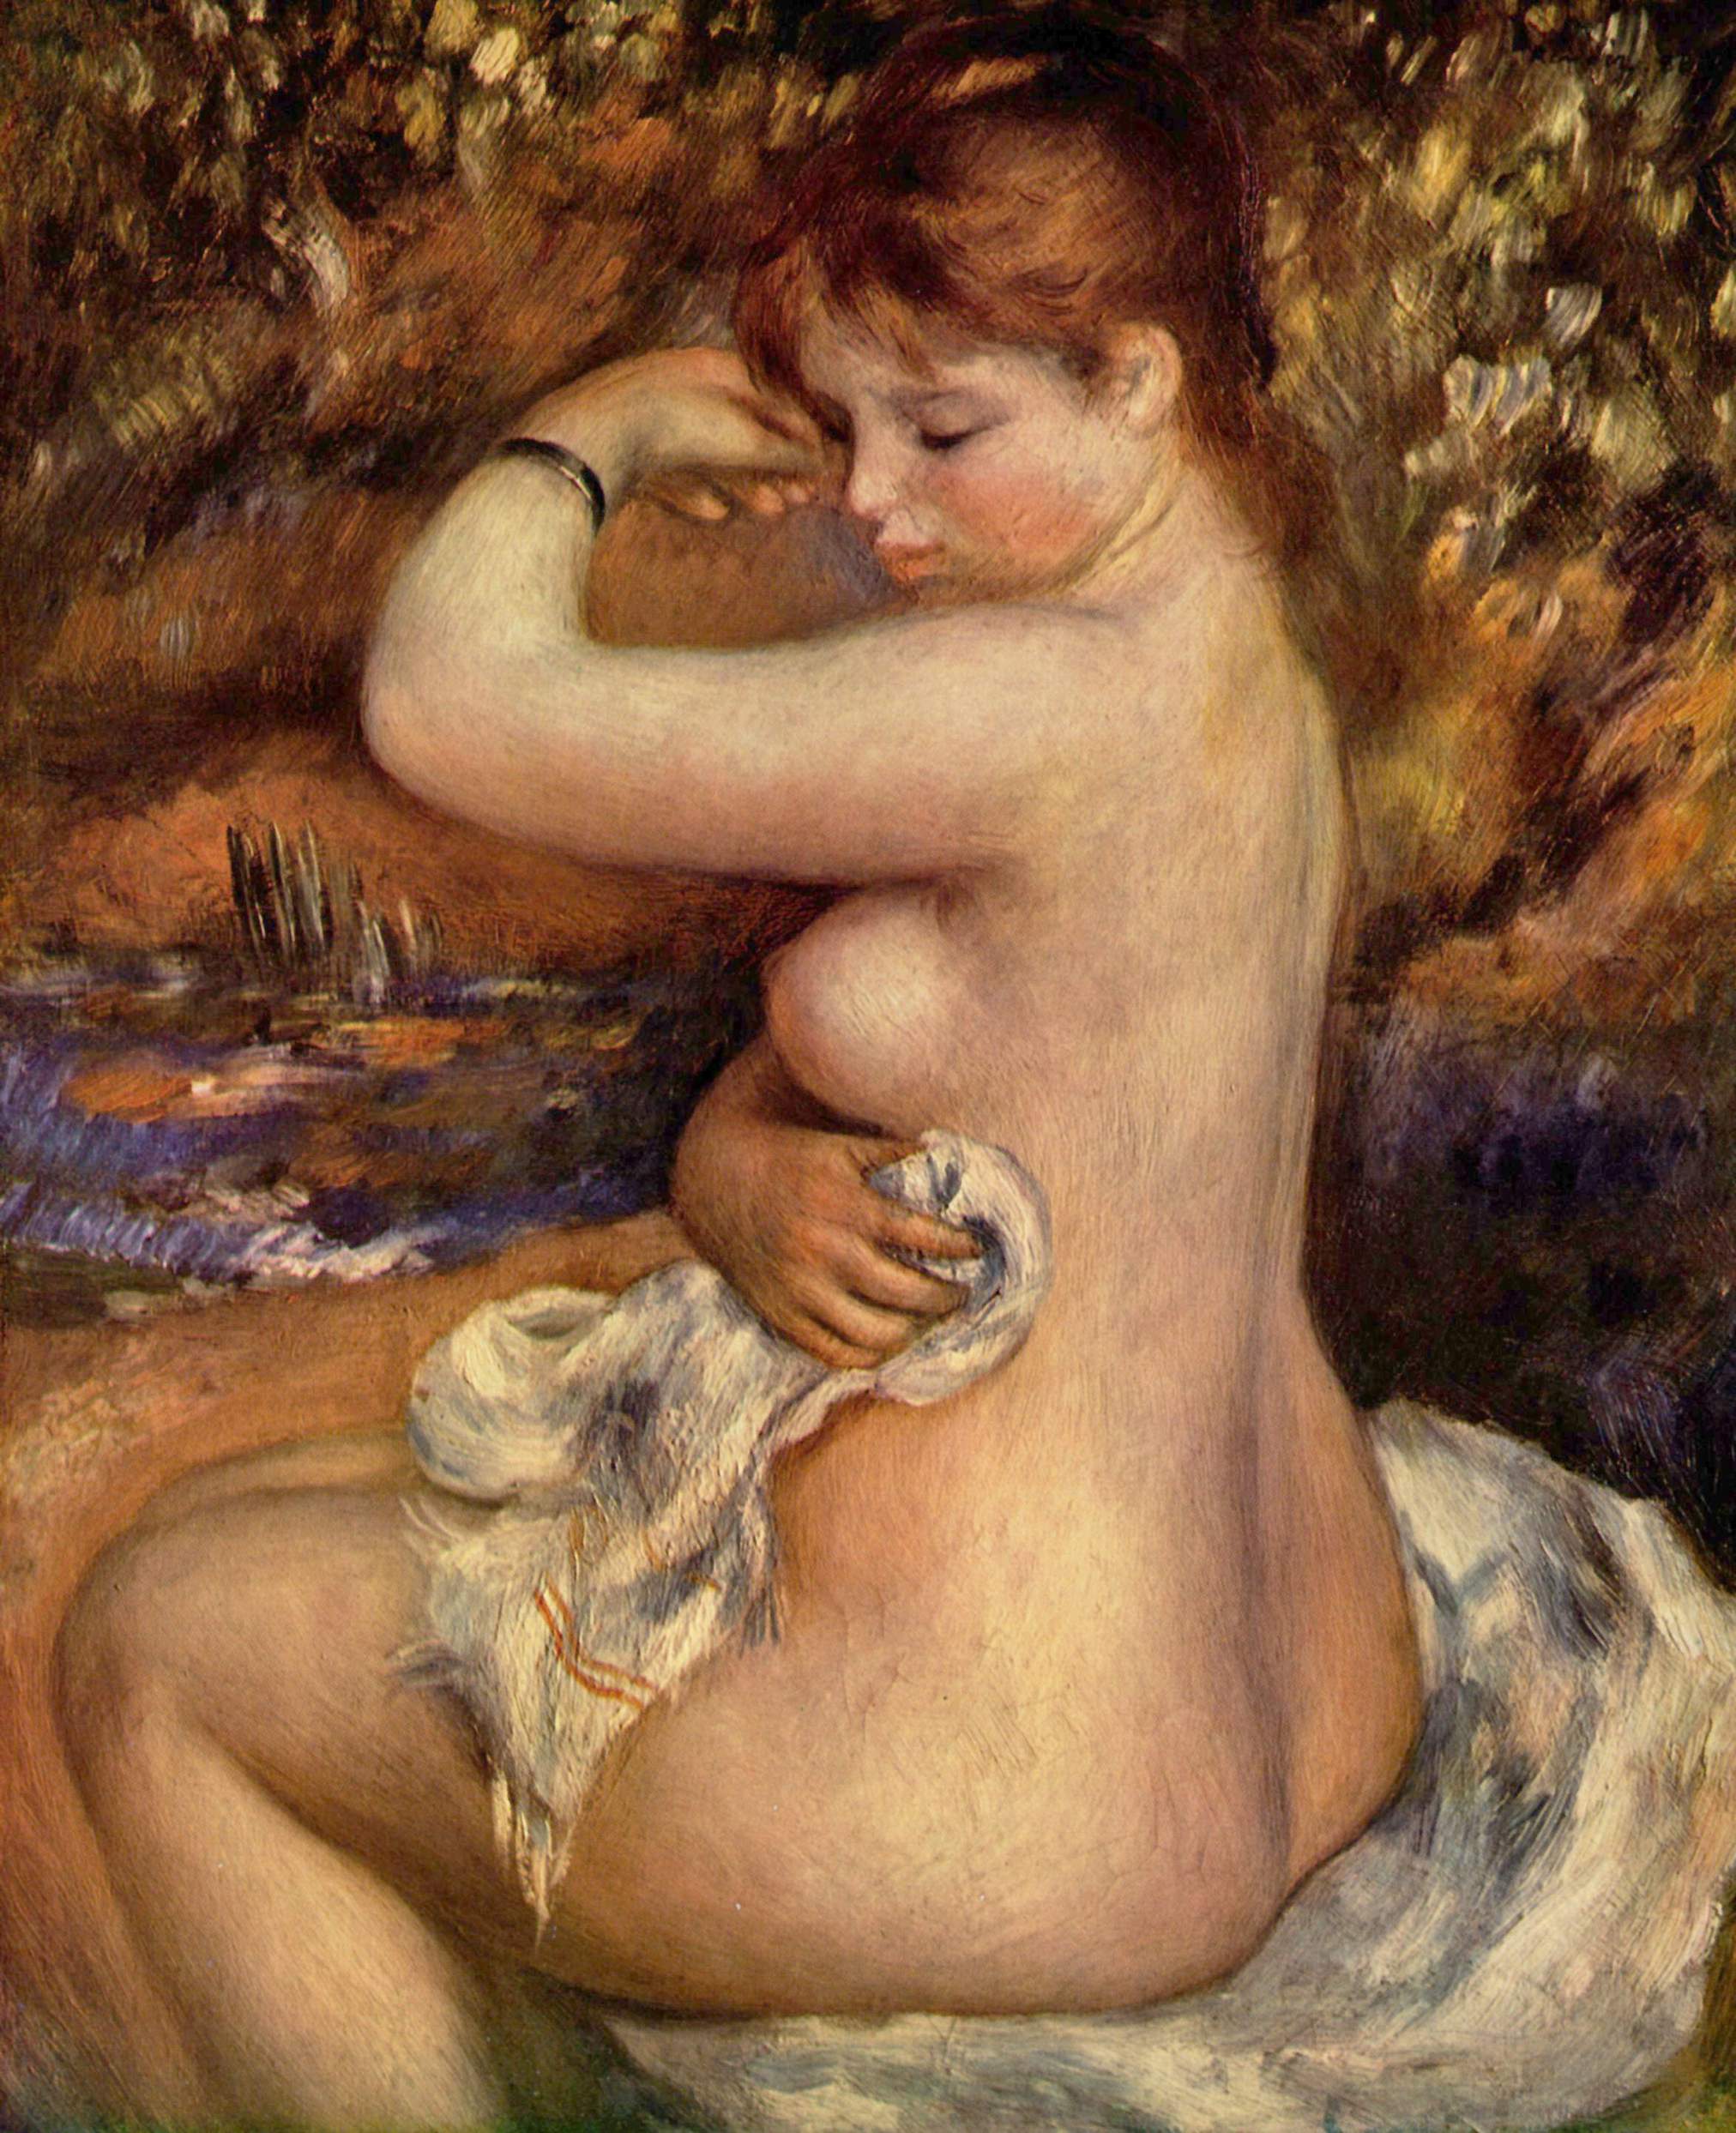 Pierre-Auguste Renoir, After the Bath (1888)